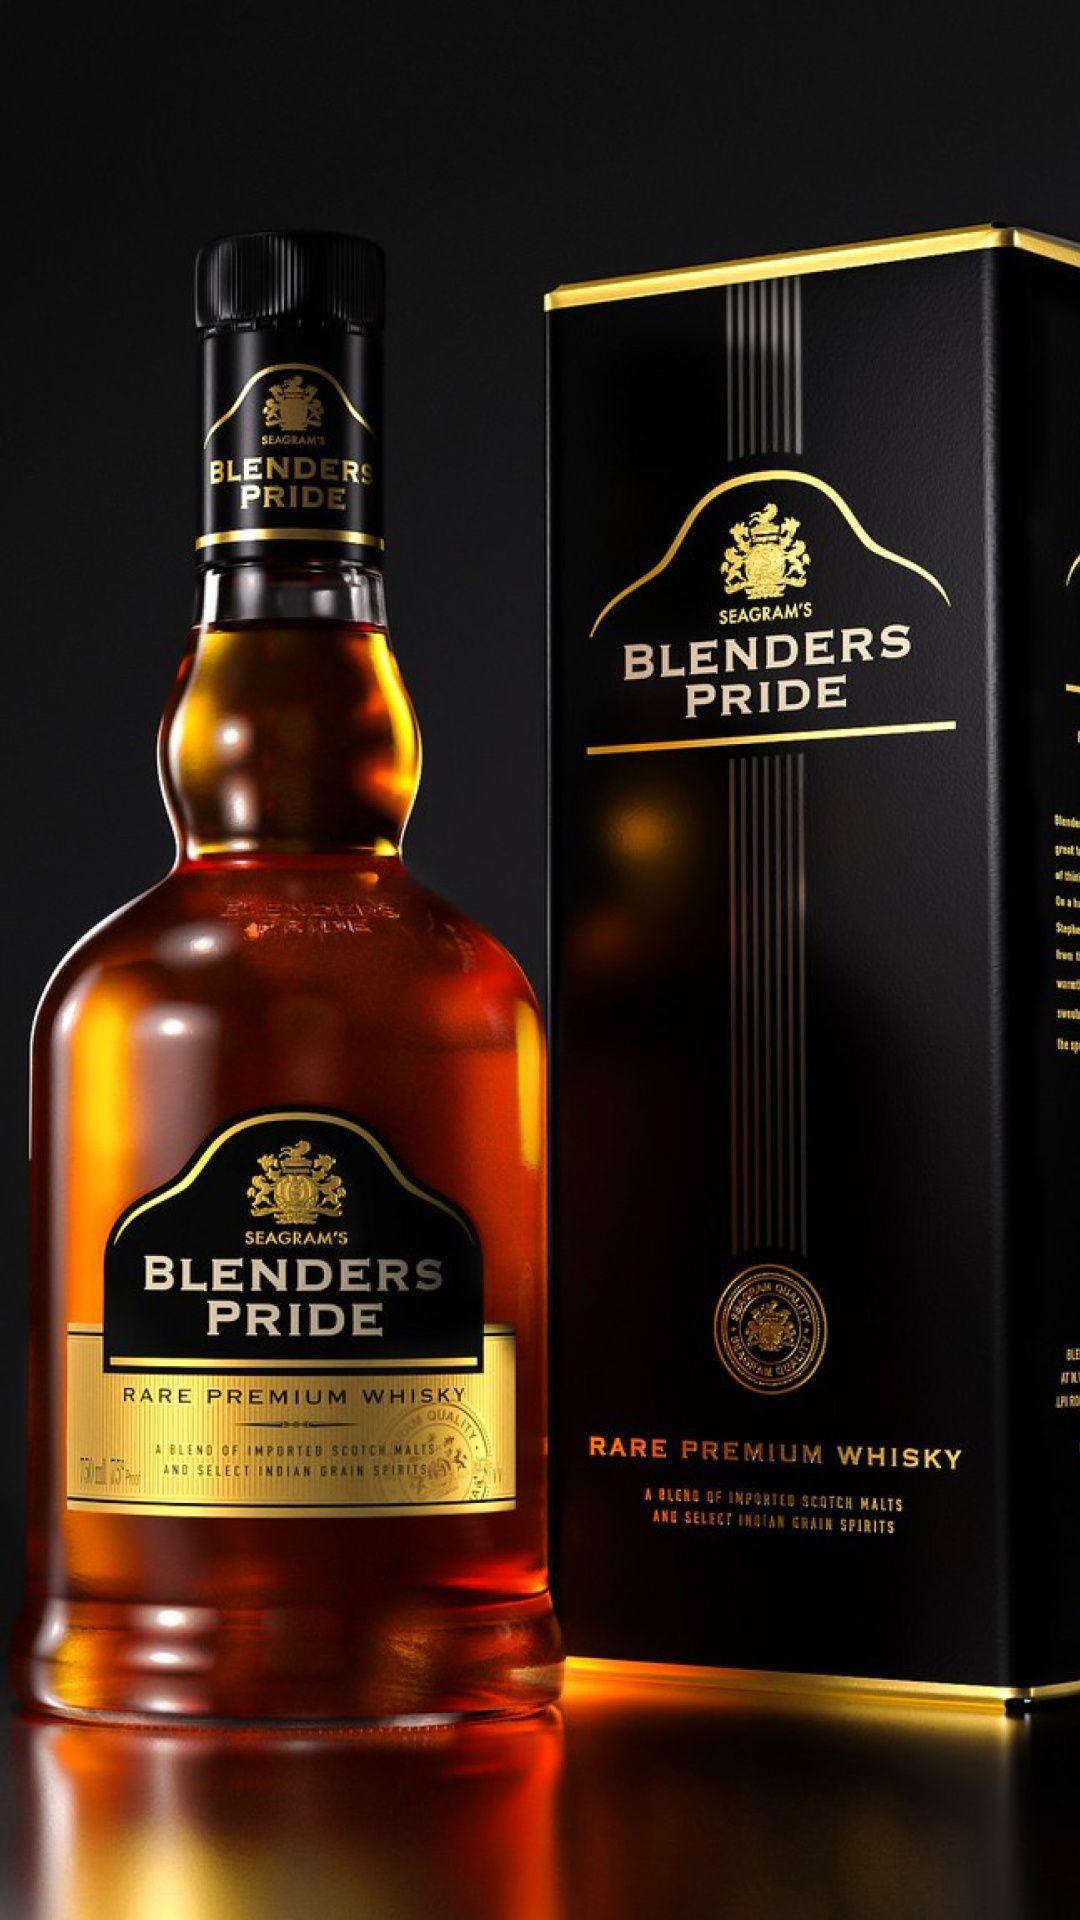 Blenders pride whisky iphone 6 HD wallpaper